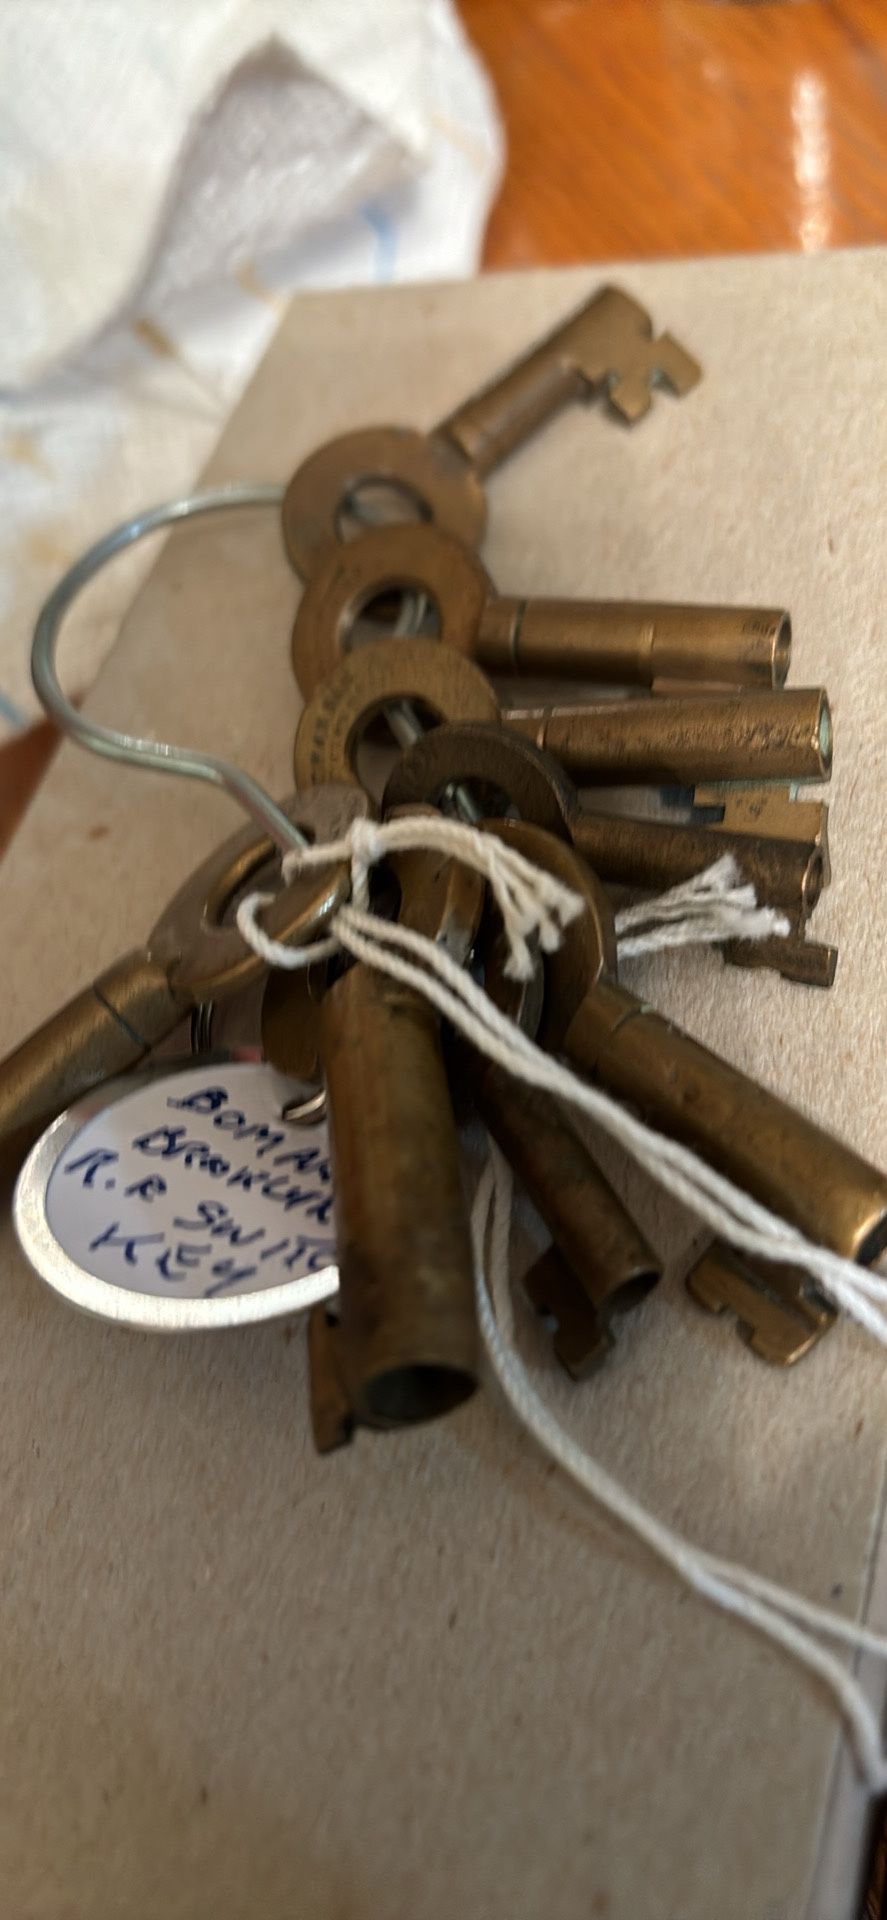 Bormann’s Railroad Switch Keys $50 Each